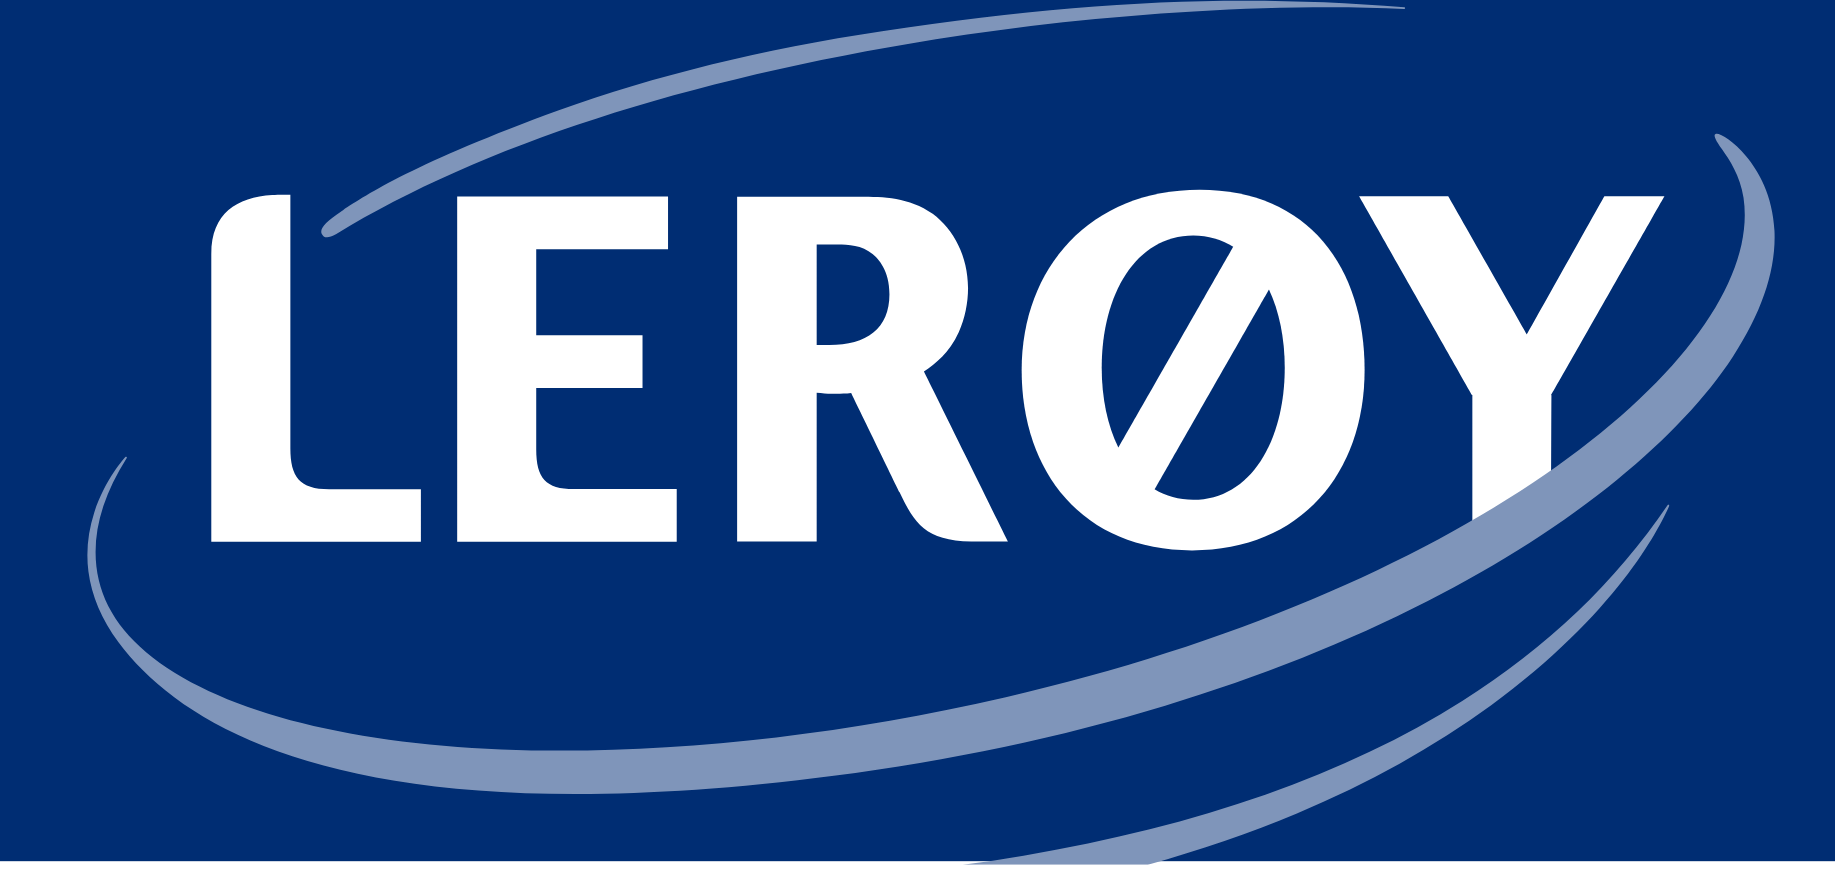 Leroy Seafood logo (PNG transparent)